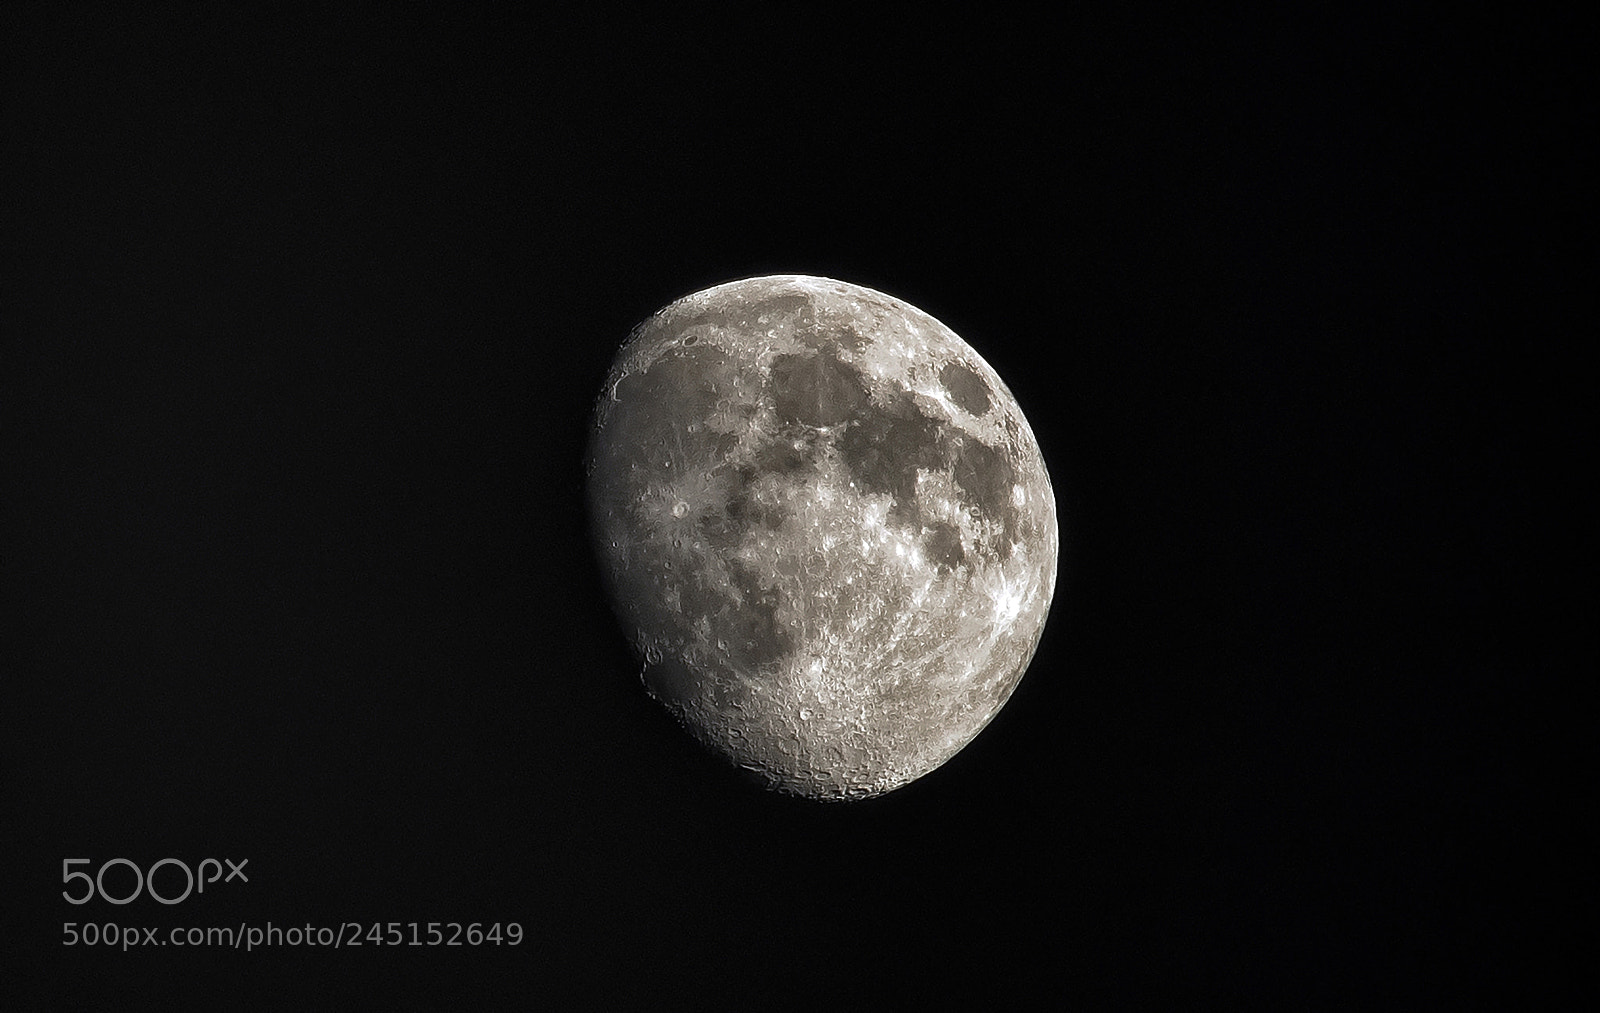 Canon EOS 80D sample photo. Inspiring moon photography